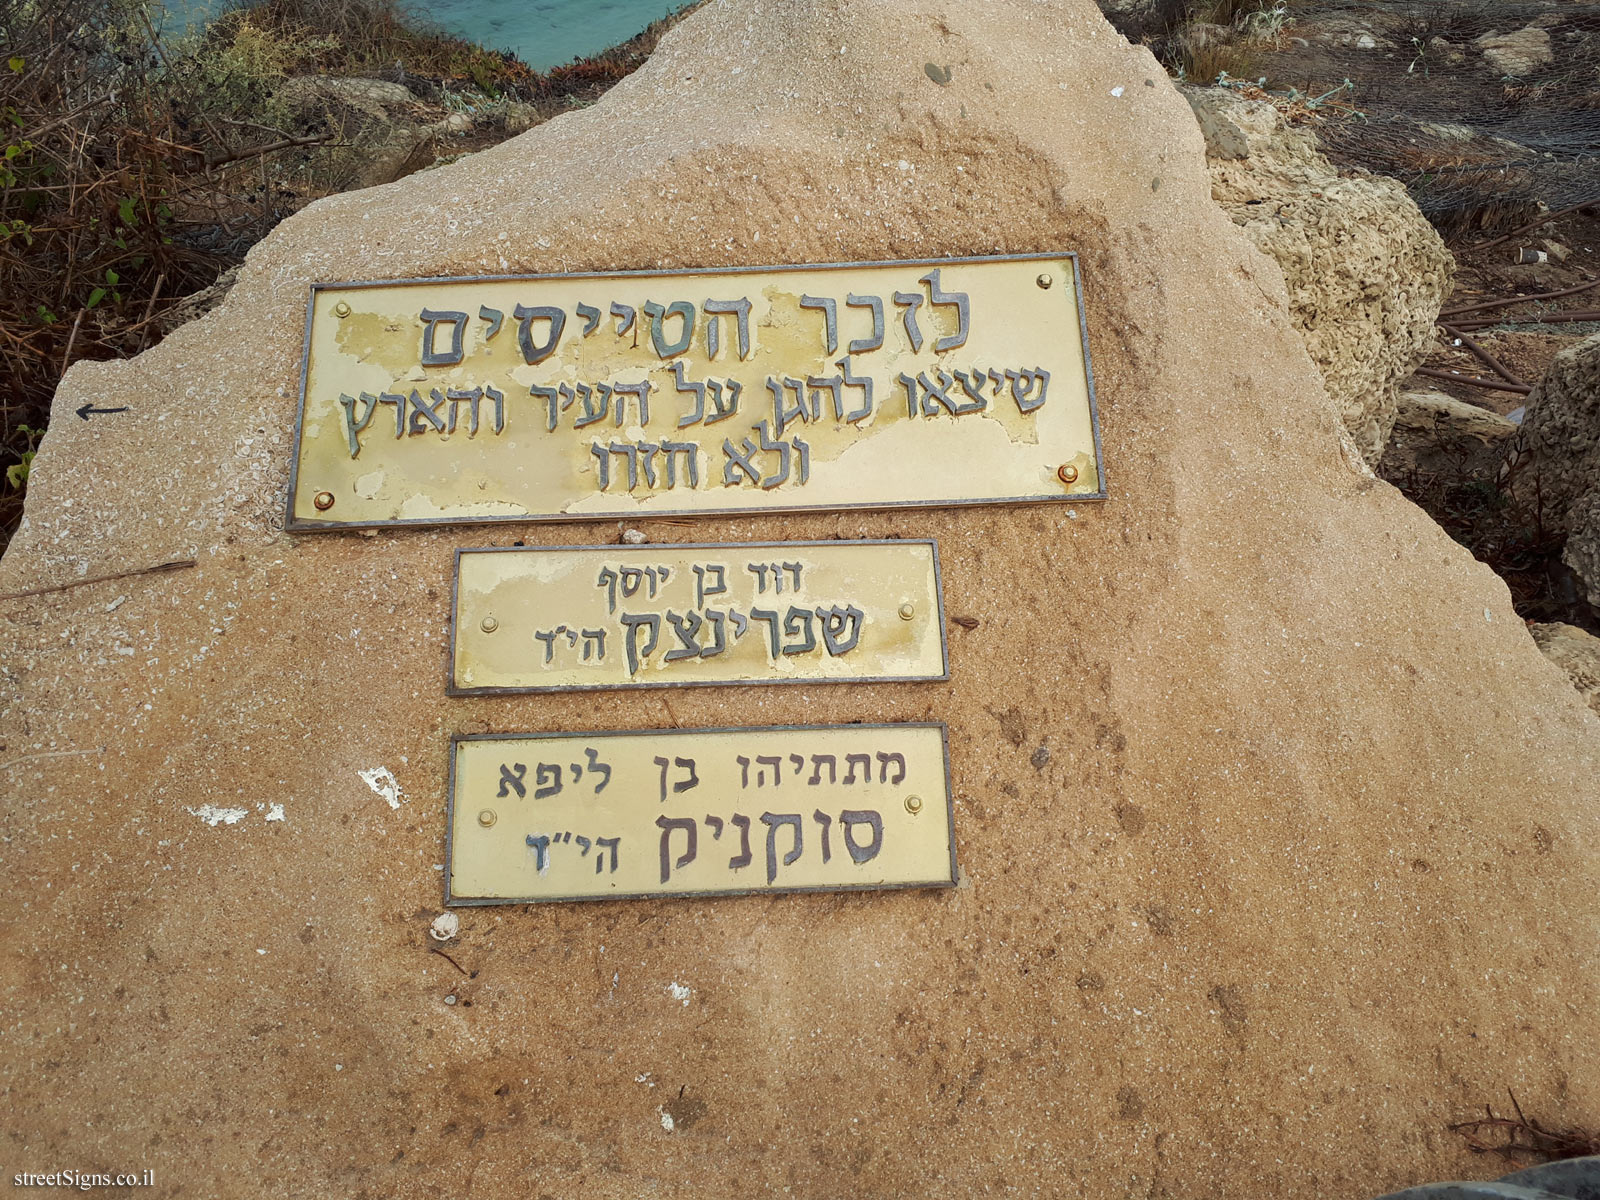 Memorial rock for David Sprinzak and Matityahu Sukenik - Shlomo Lahat Promenade, Tel Aviv-Yafo, Israel